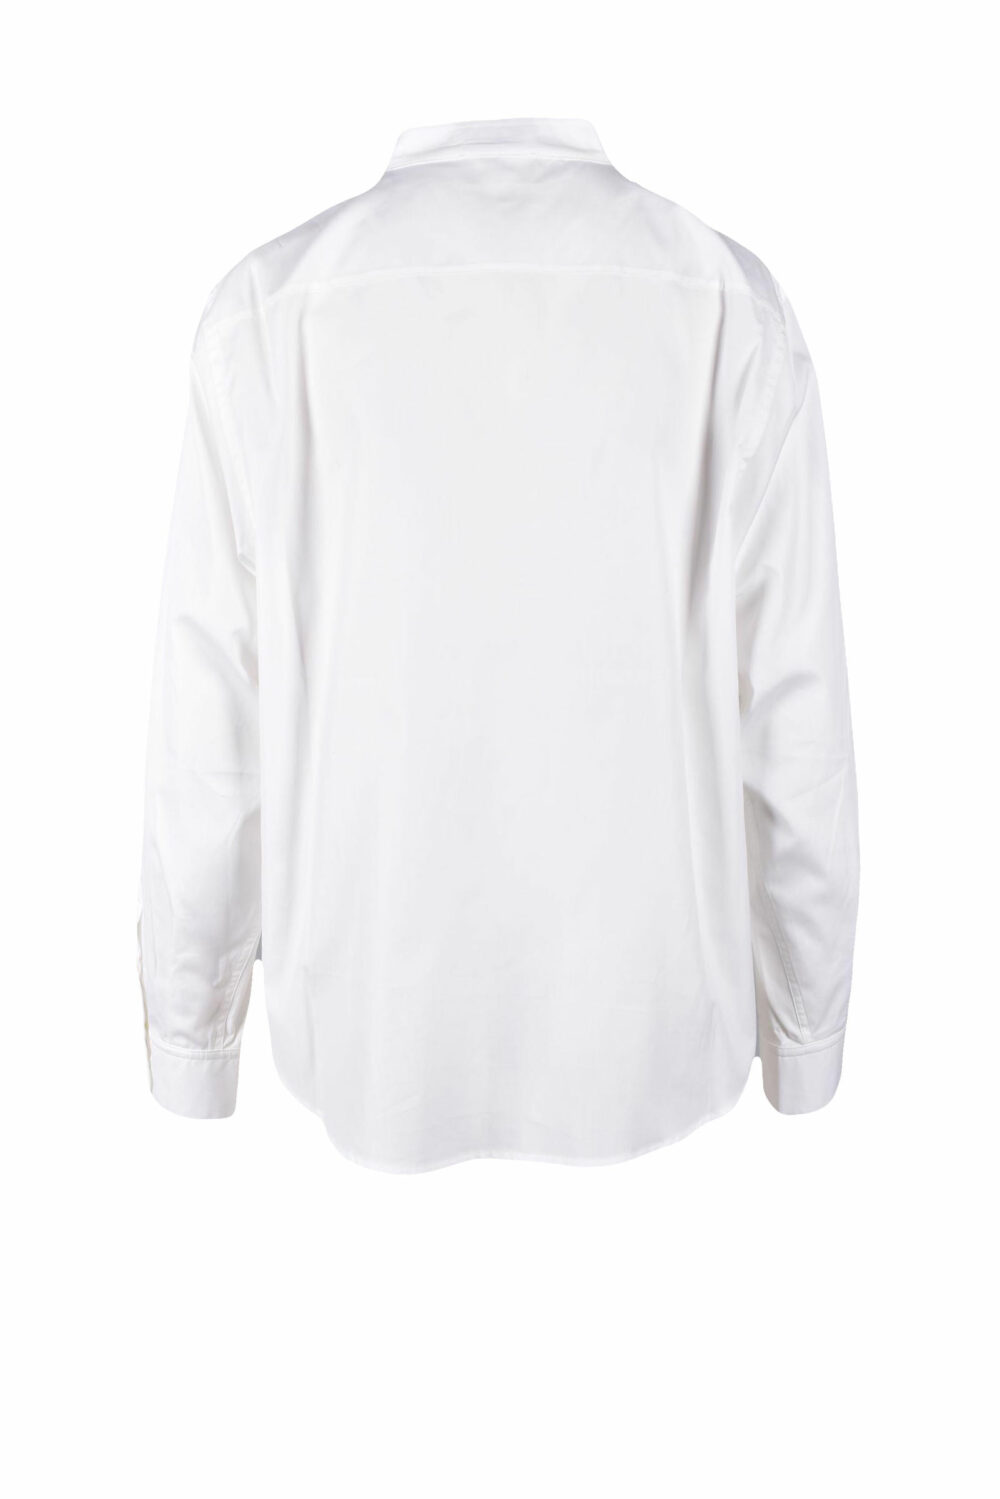 Camicia manica lunga Emporio Armani Bianco - Foto 2